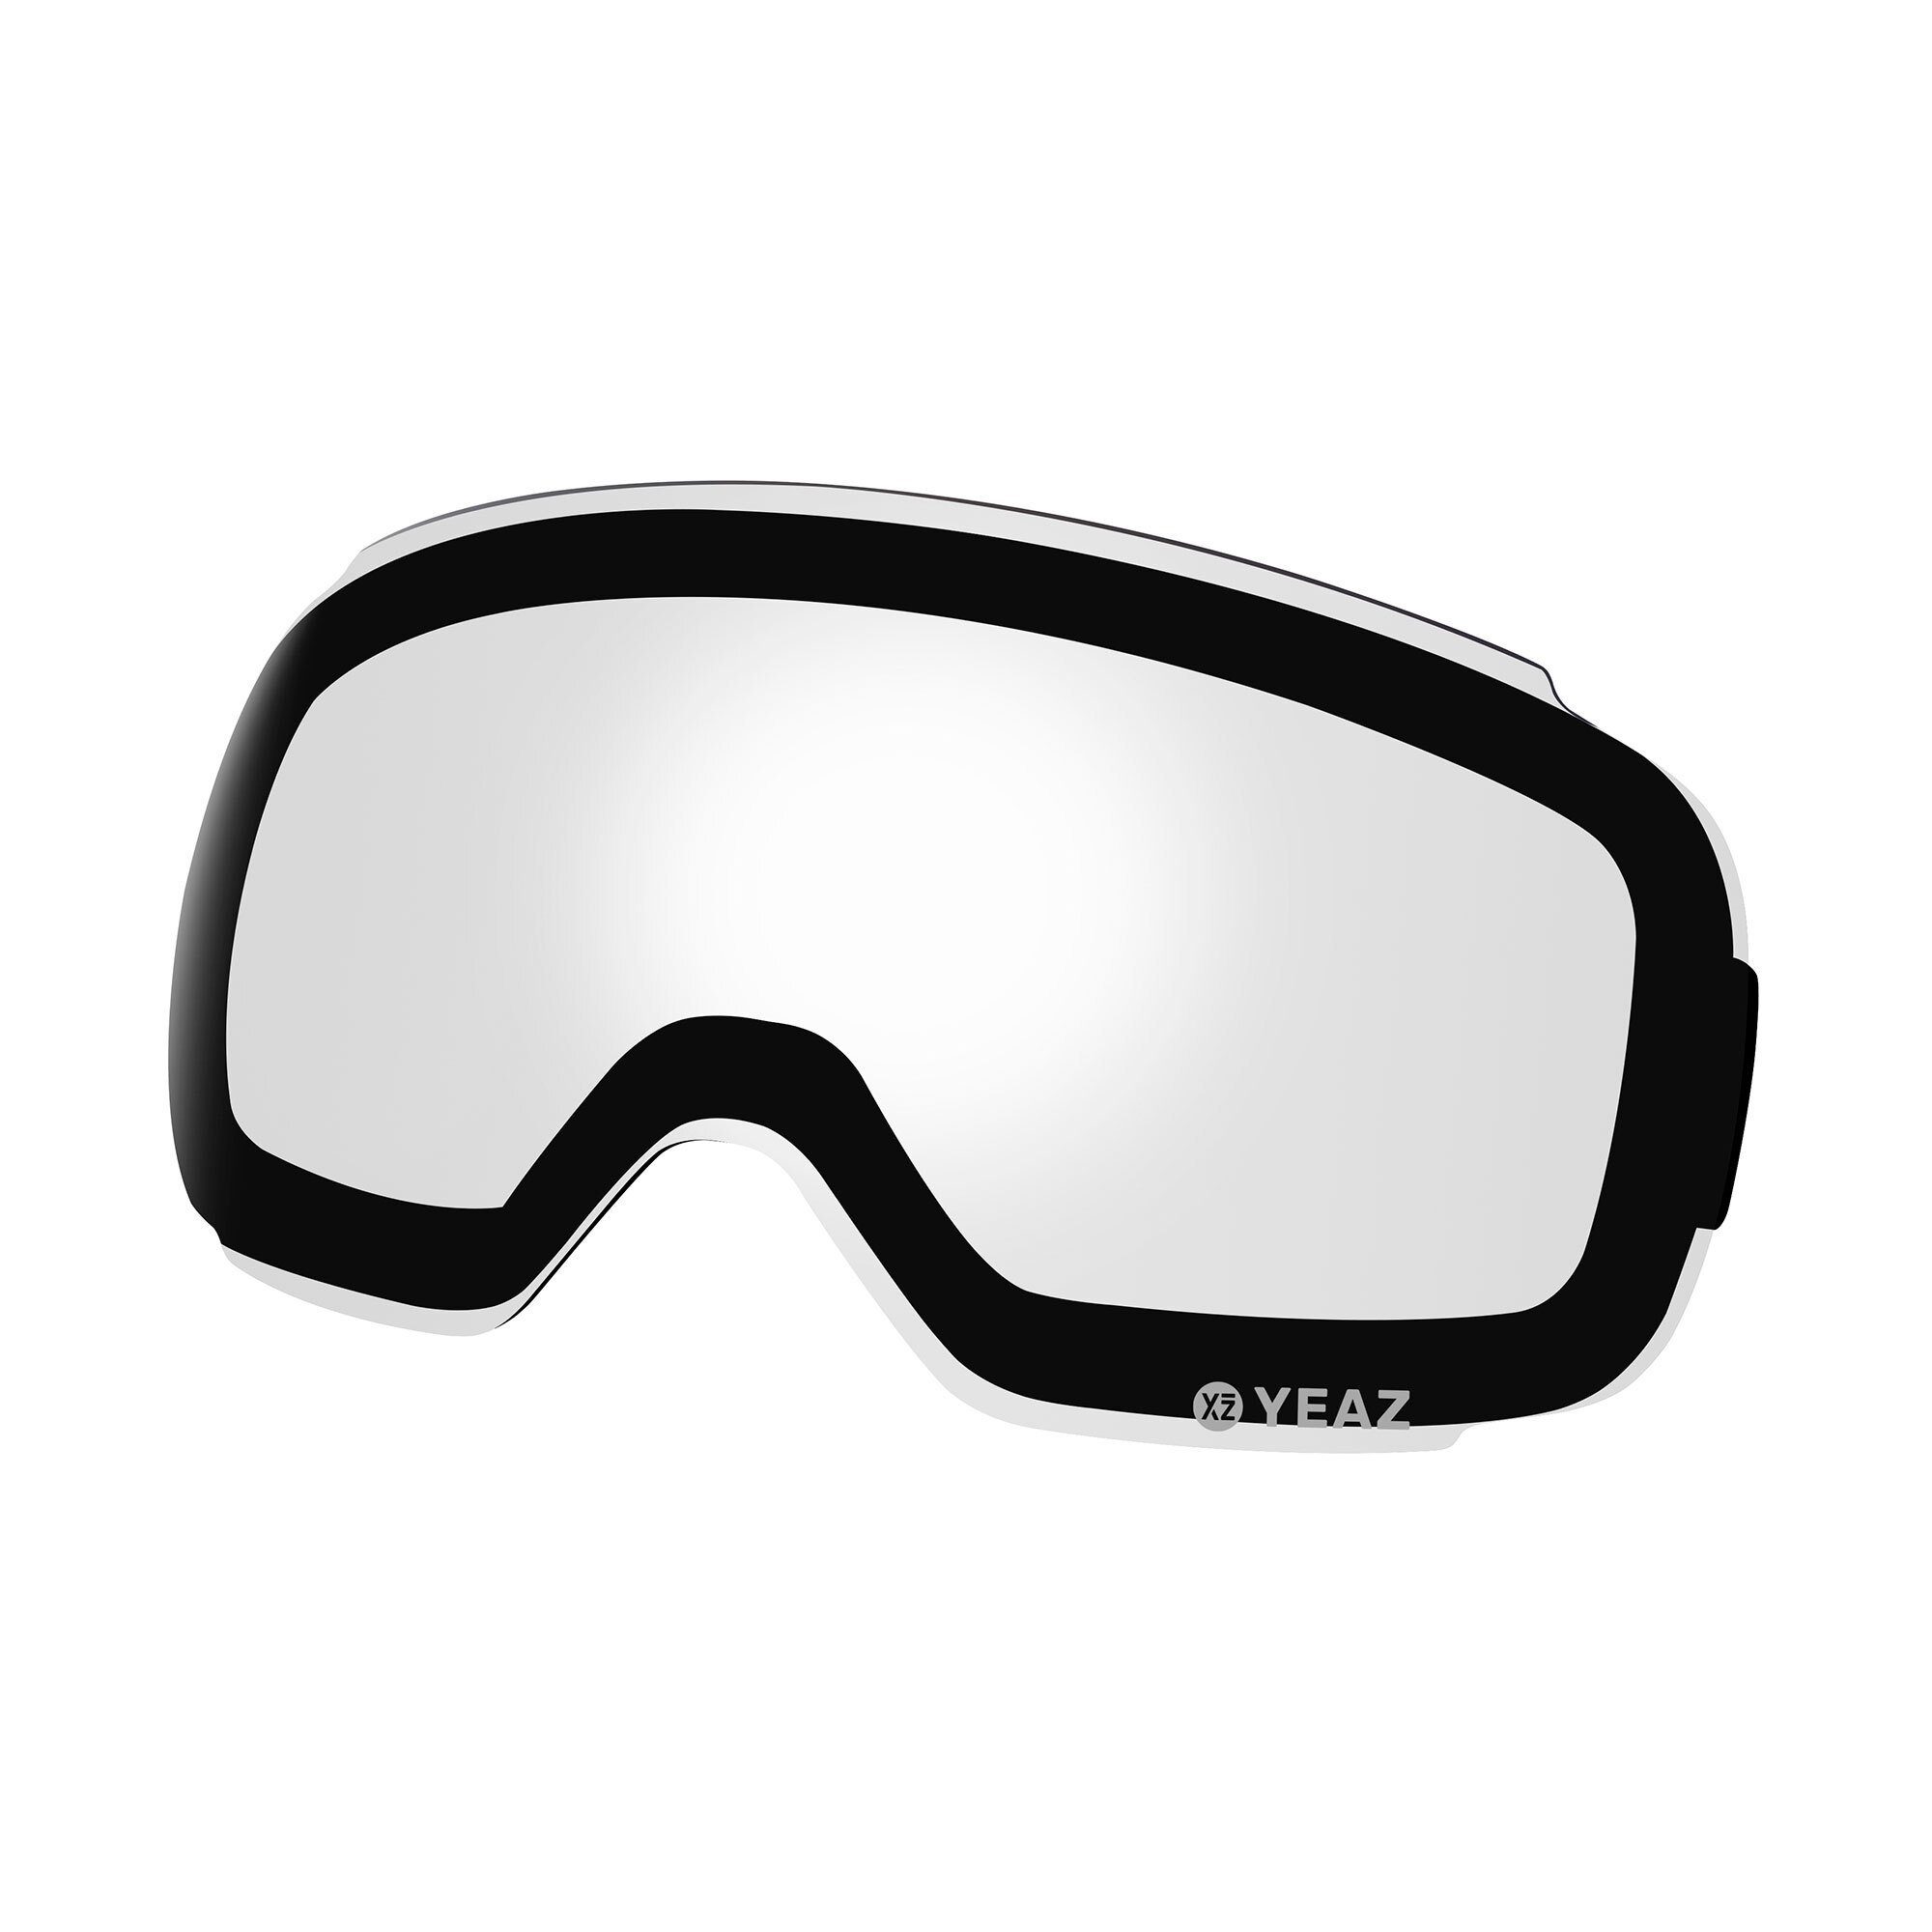 Photochrome Ersatzglas TWEAK-X für Skibrille Skibrille ski- snowboardbrille, TWEAK-X wechselglas für YEAZ